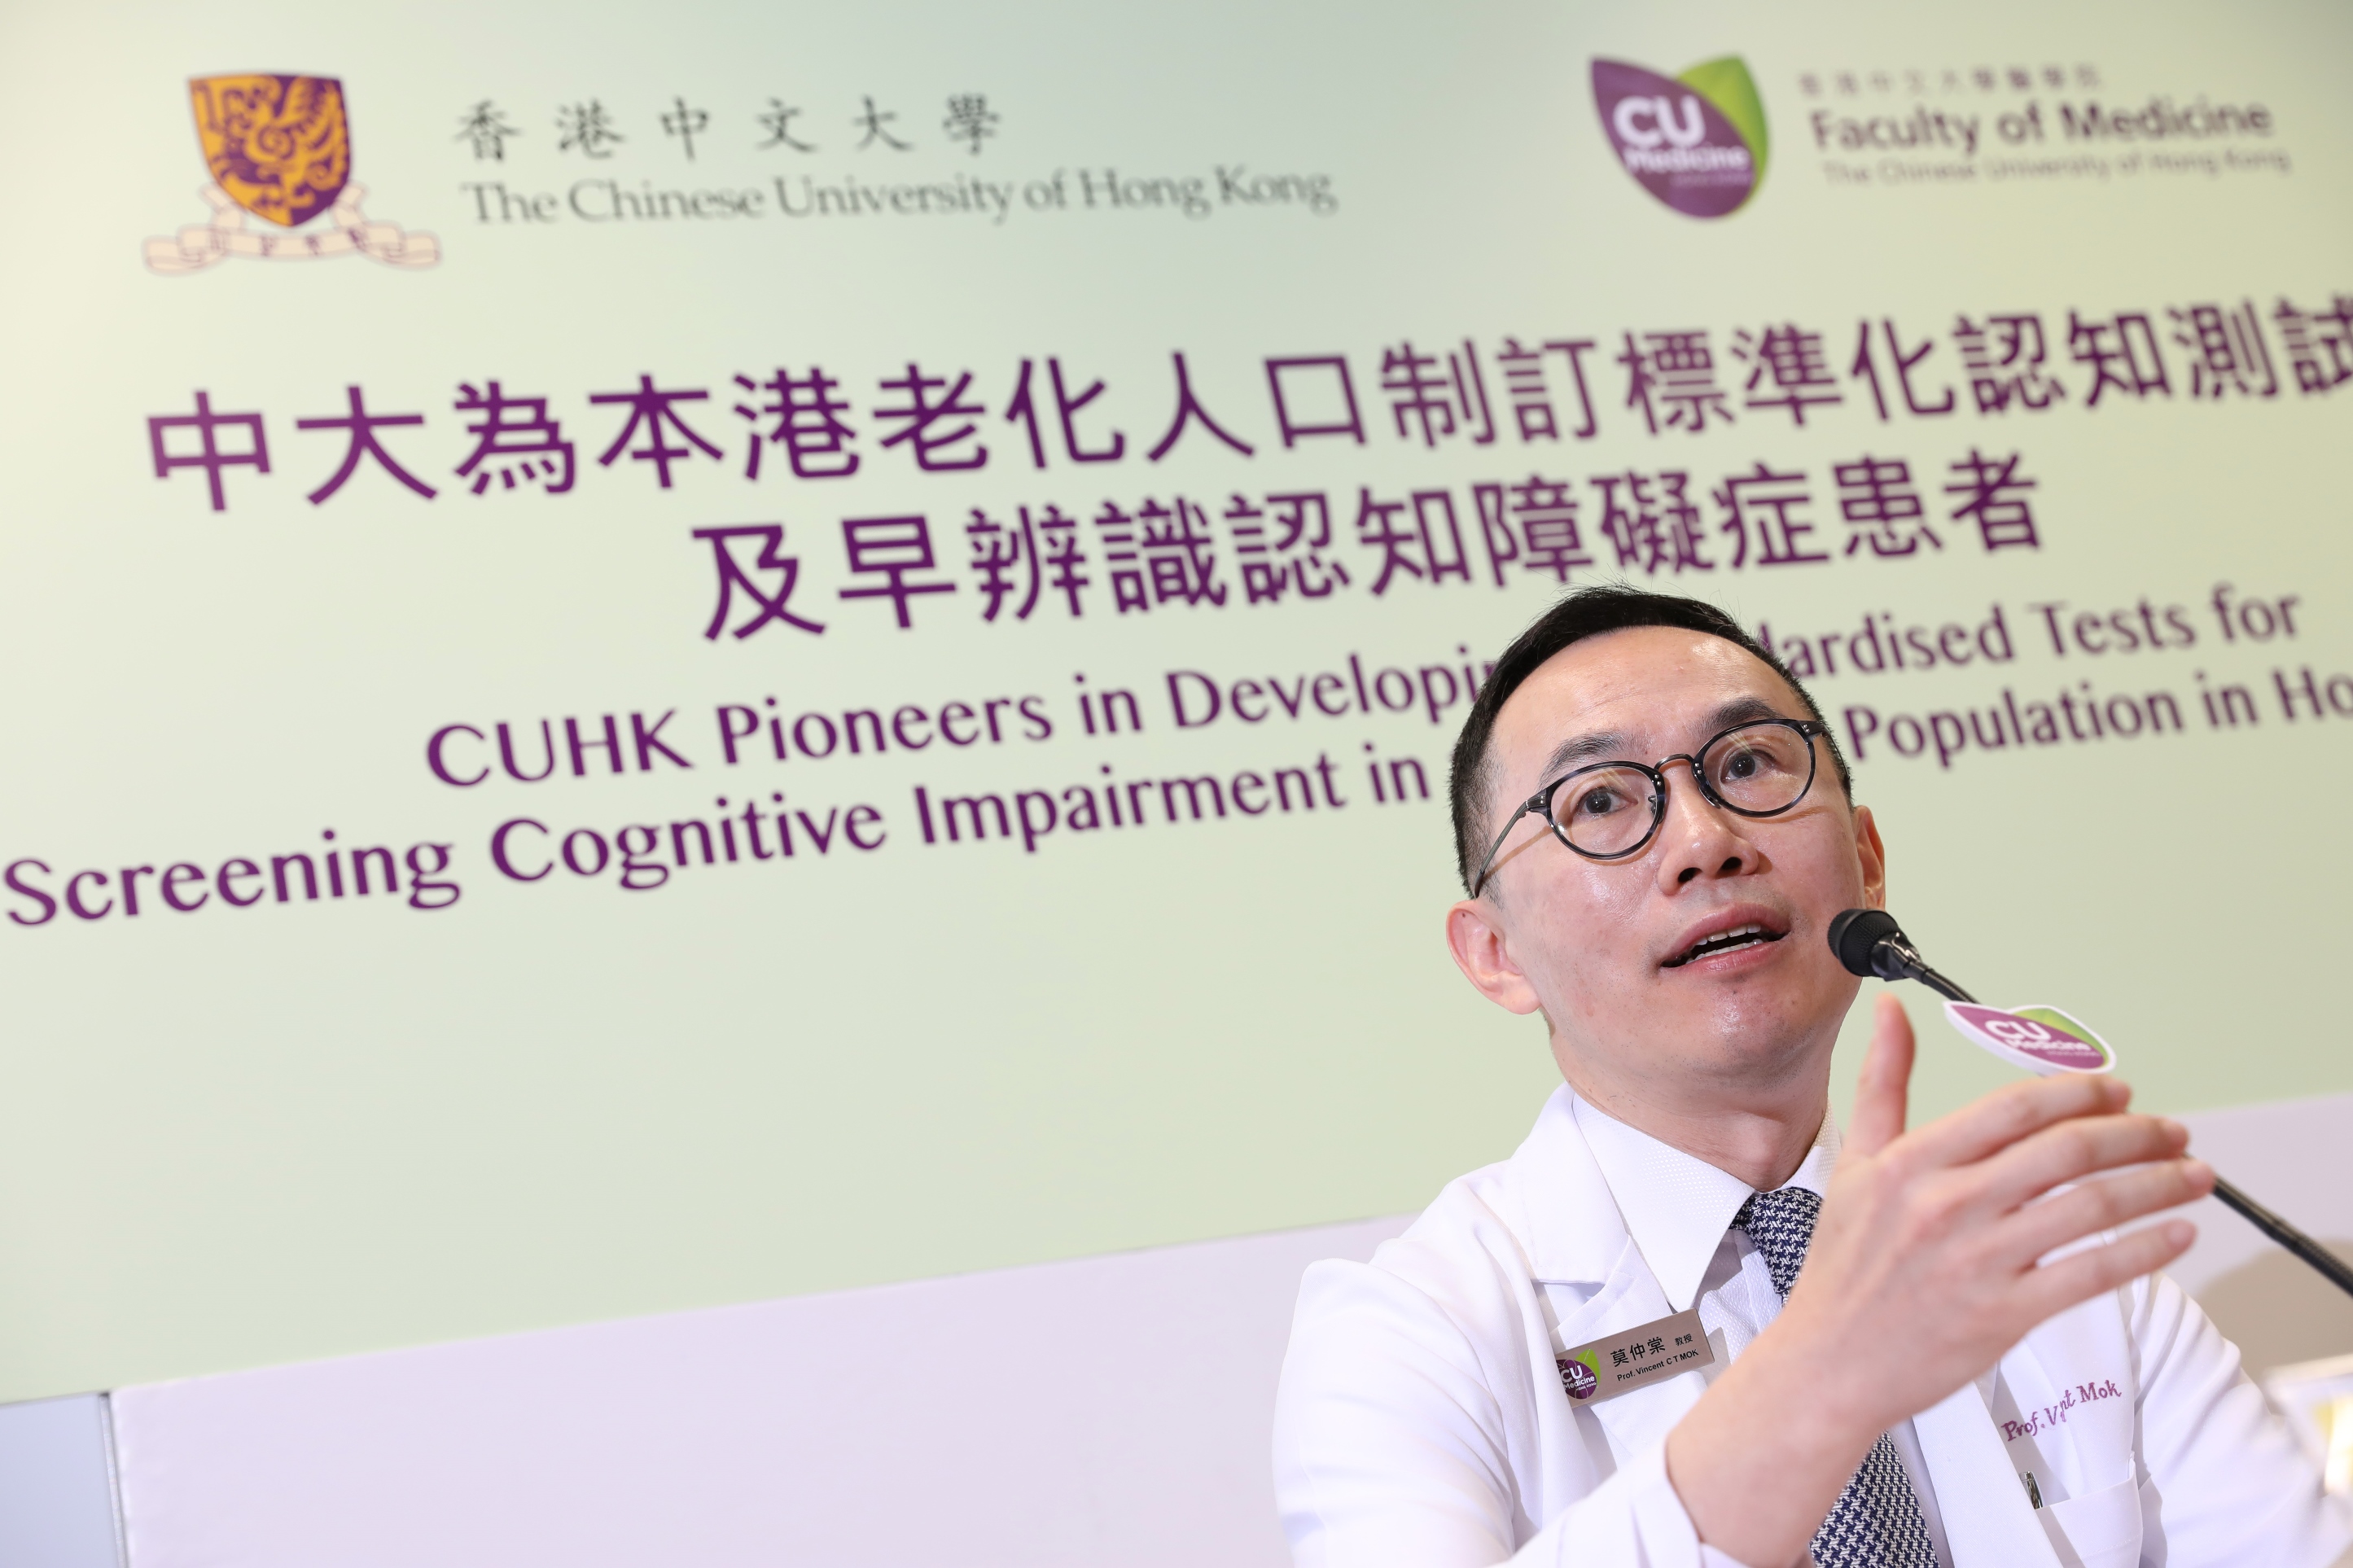 莫仲棠教授表示兩套測試現為香港醫護及社福專業人員廣泛採用。團隊由2016年至今已培訓超過4,500位來自全港不同醫院及非牟利機構的社福及醫護專業人員。